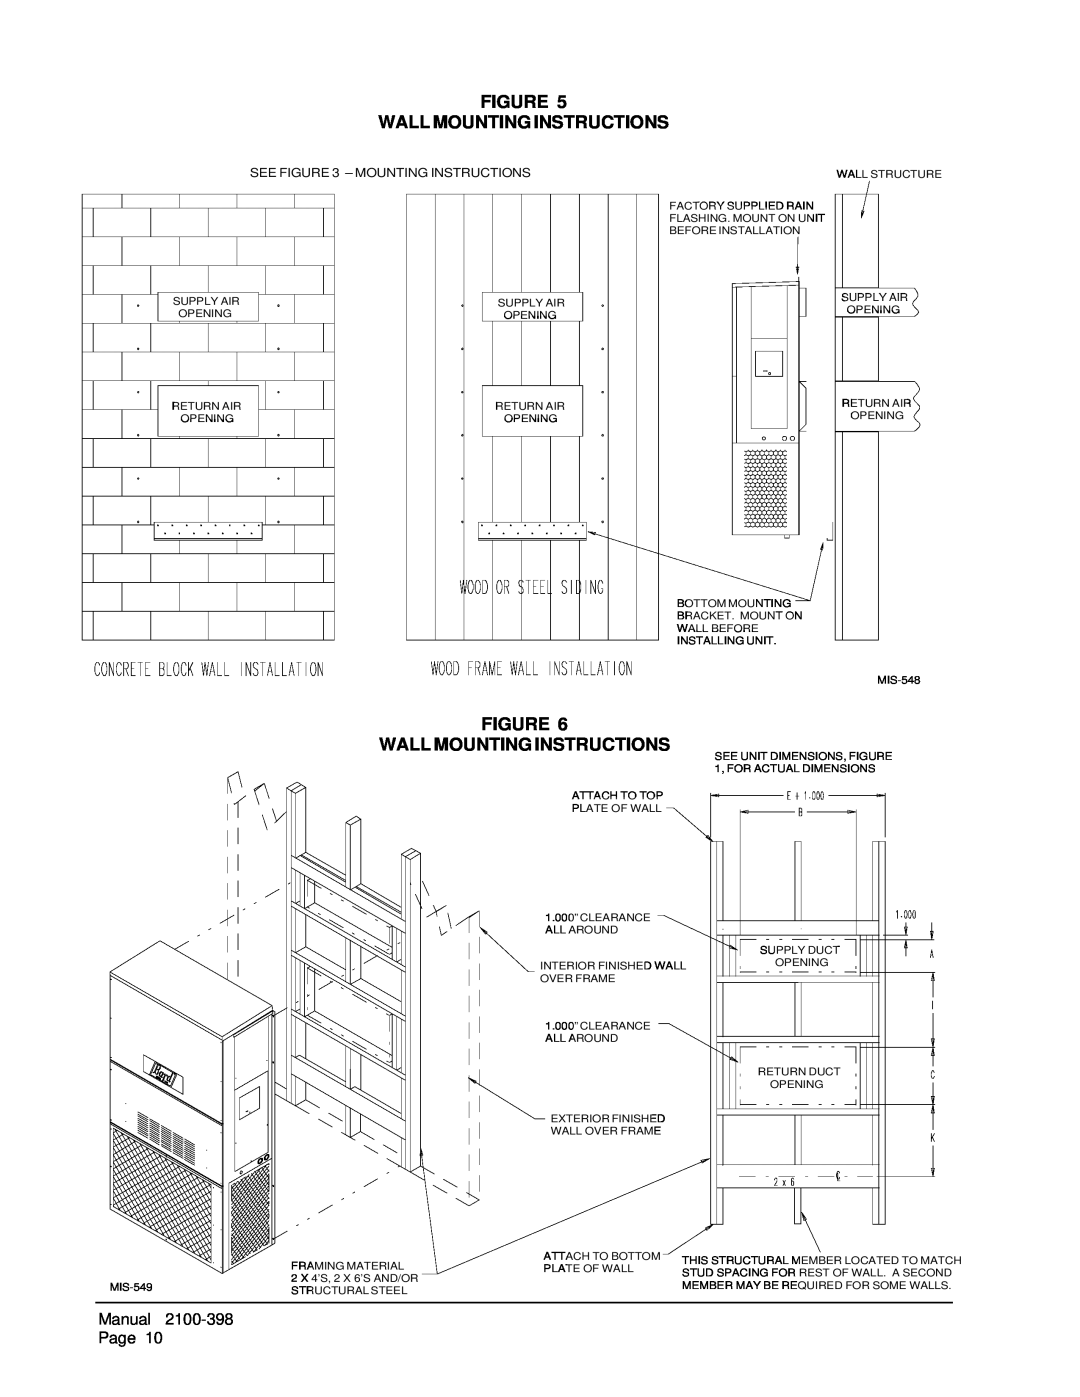 Bard WA484, WA602, WA491, WA381, WA423 installation instructions Figure Wall Mounting Instructions, See - Mounting Instructions 